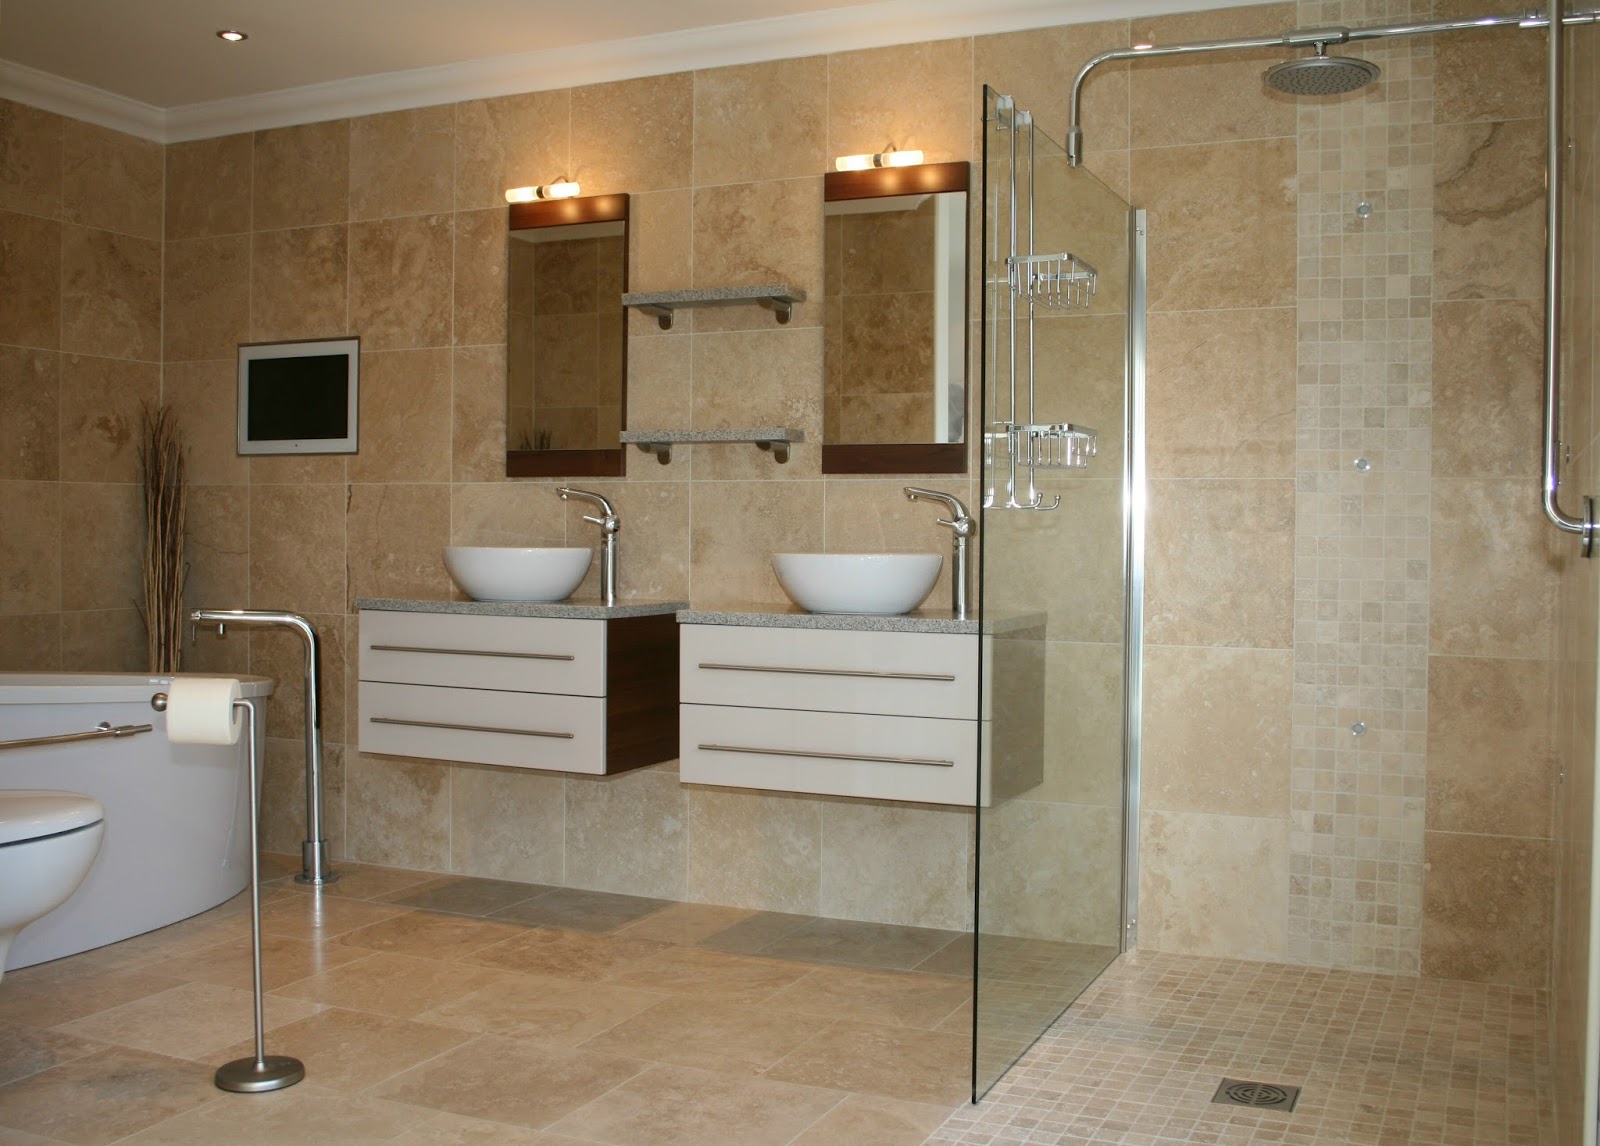 décoration salle de bain contemporaine